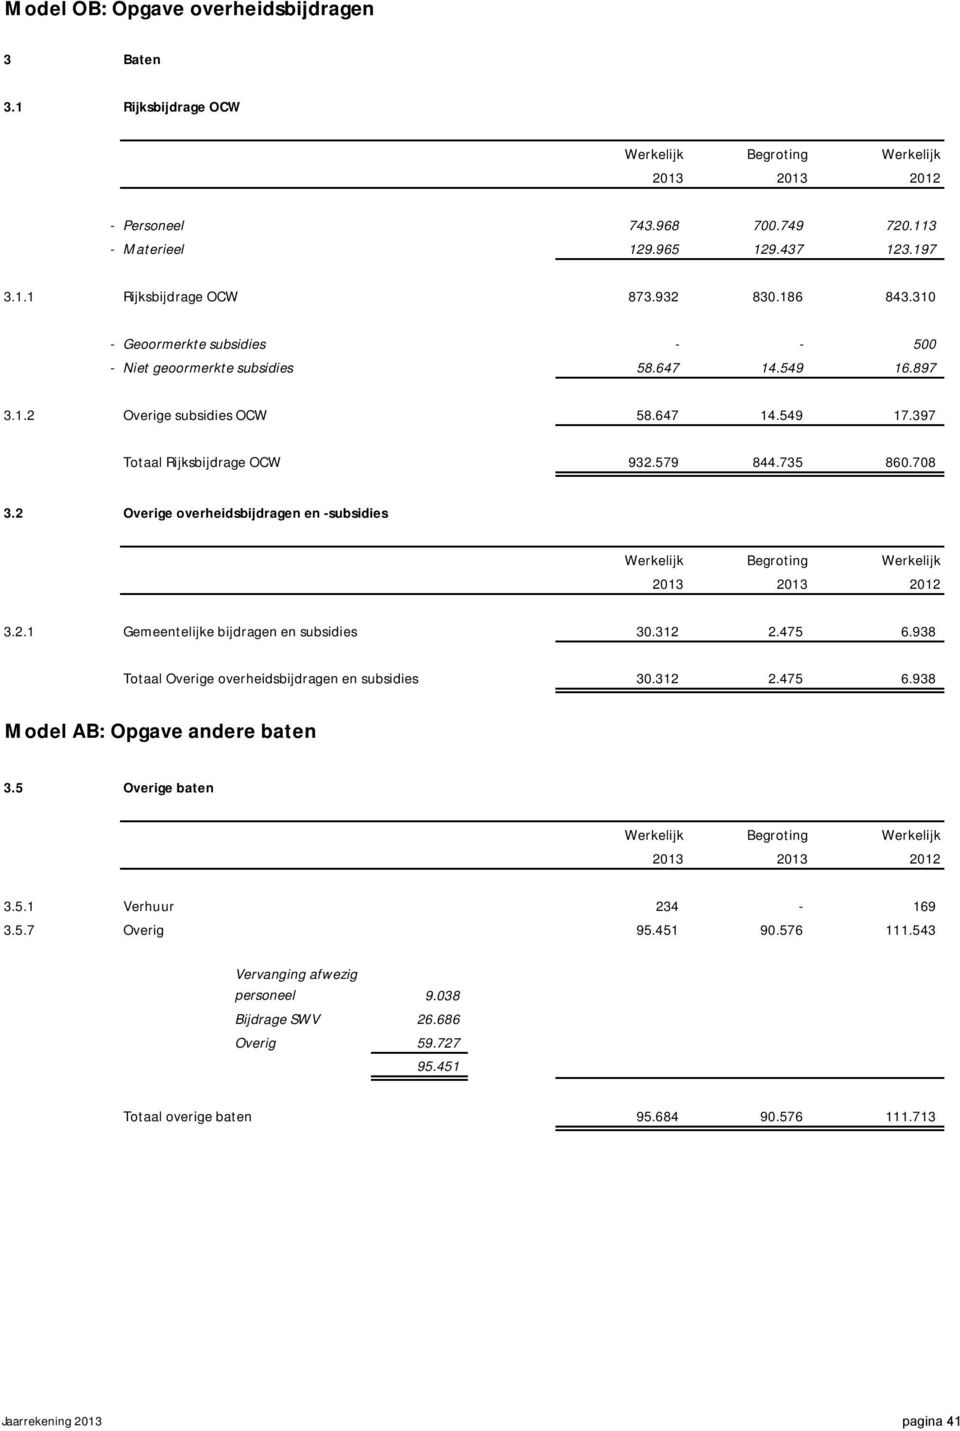 708 3.2 Overige overheidsbijdragen en -subsidies Werkelijk Begroting Werkelijk 2013 2013 2012 3.2.1 Gemeentelijke bijdragen en subsidies 30.312 2.475 6.